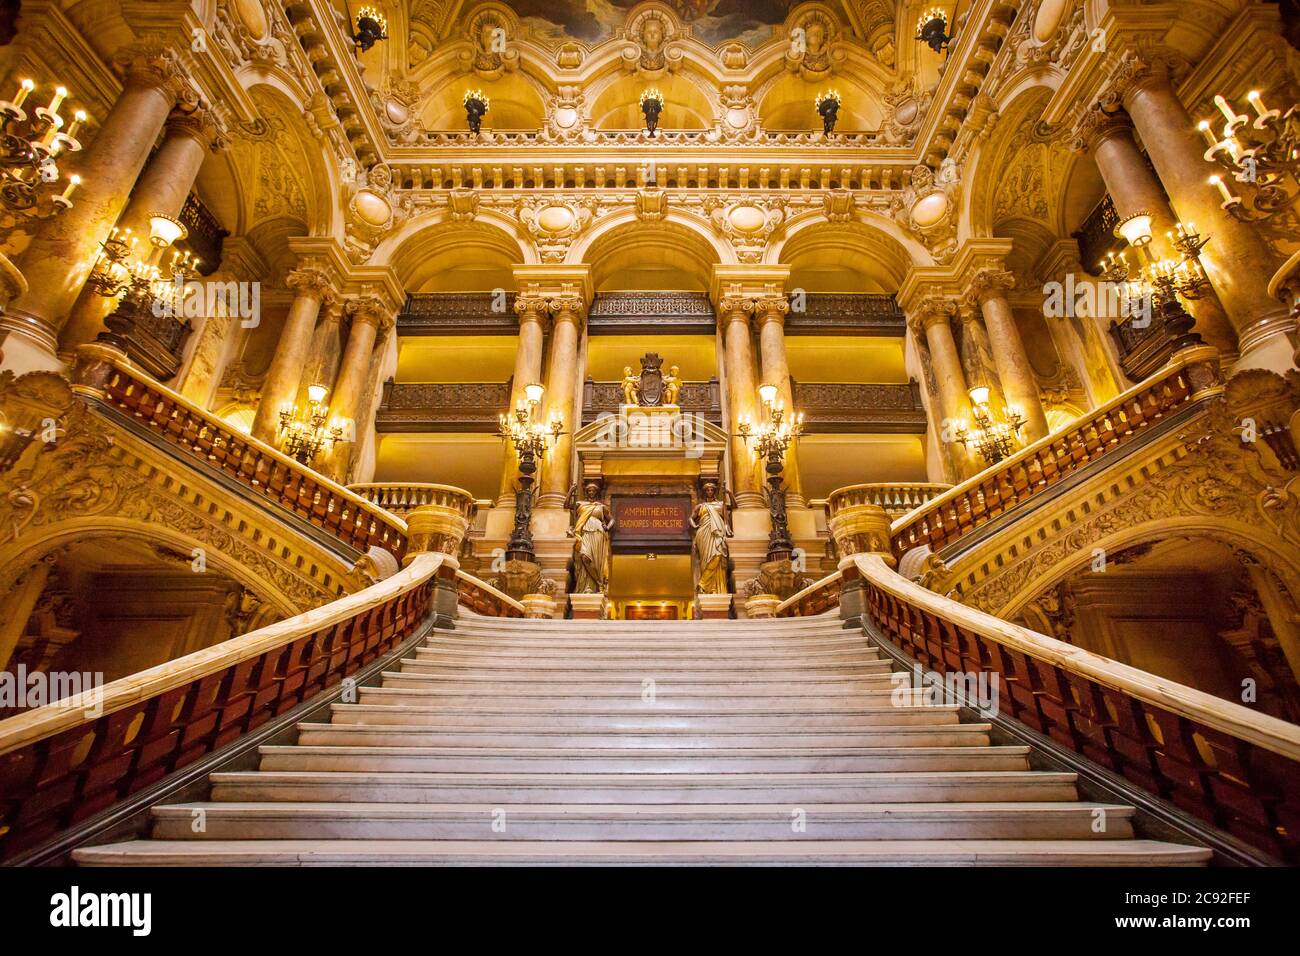 Entrée ornée de Palais Garnier - Opéra, Paris France Banque D'Images